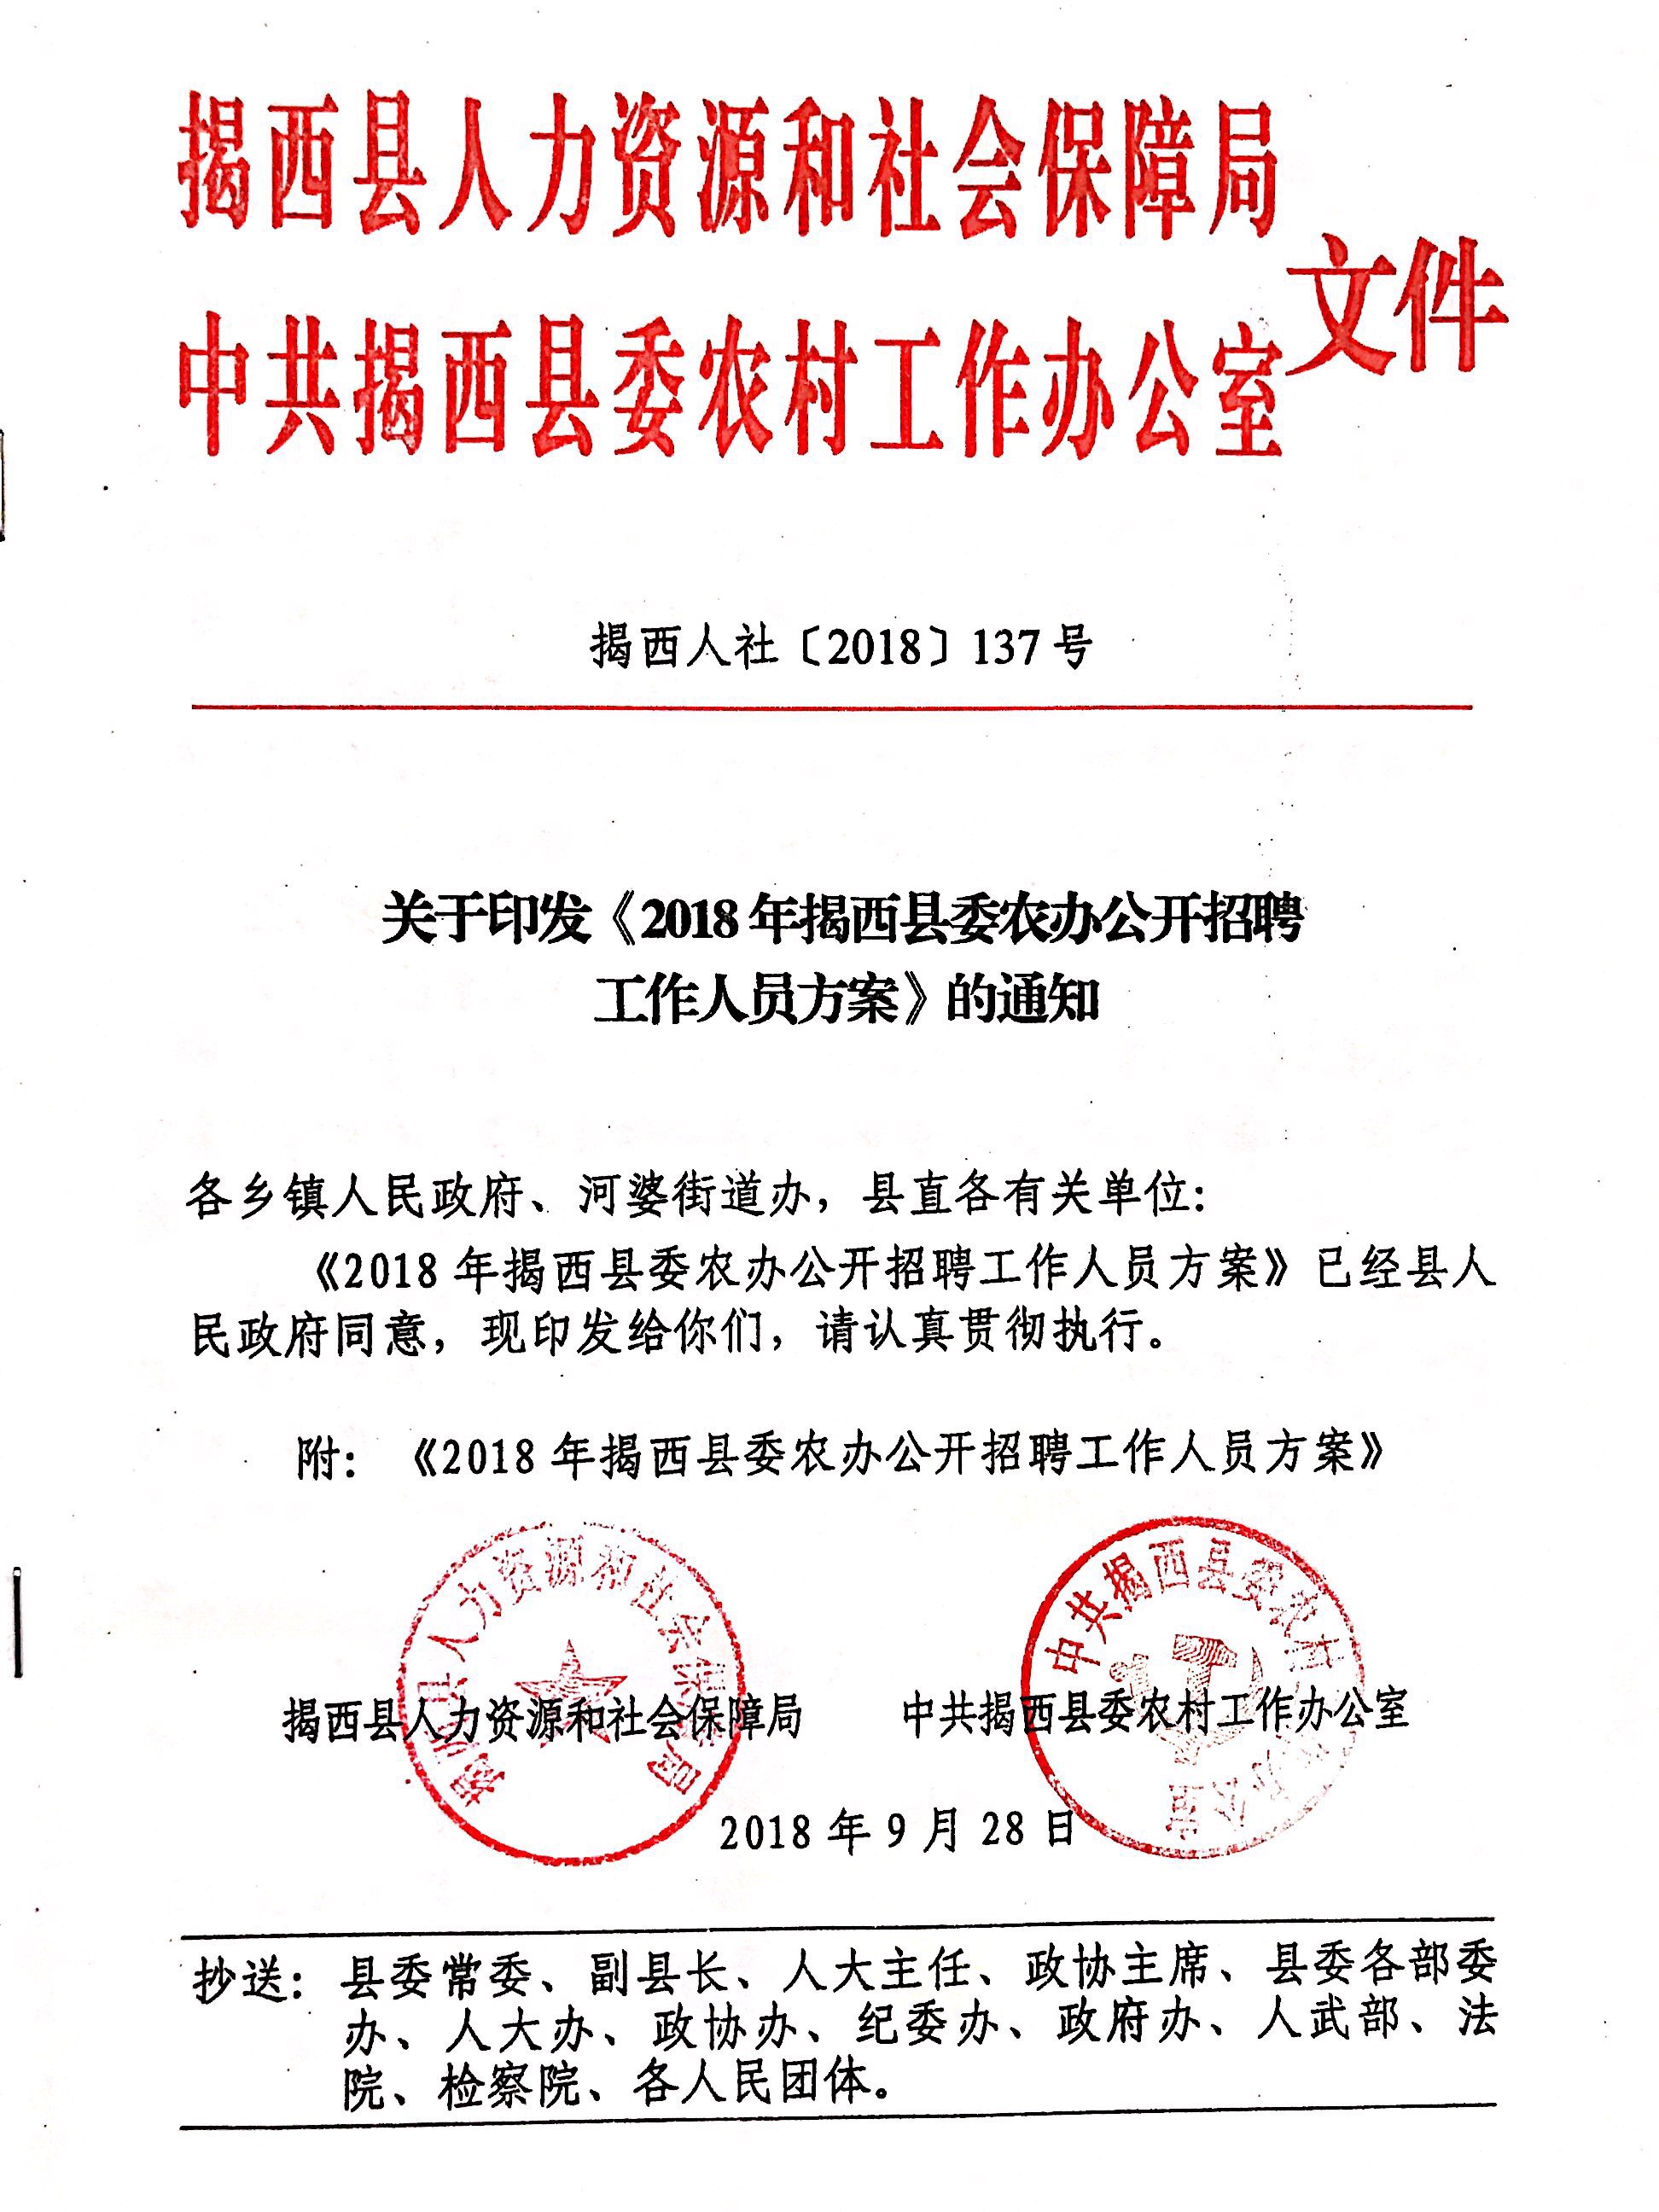 关于印发《2018年揭西县委农办公开招聘工作人员方案》的通知.jpg